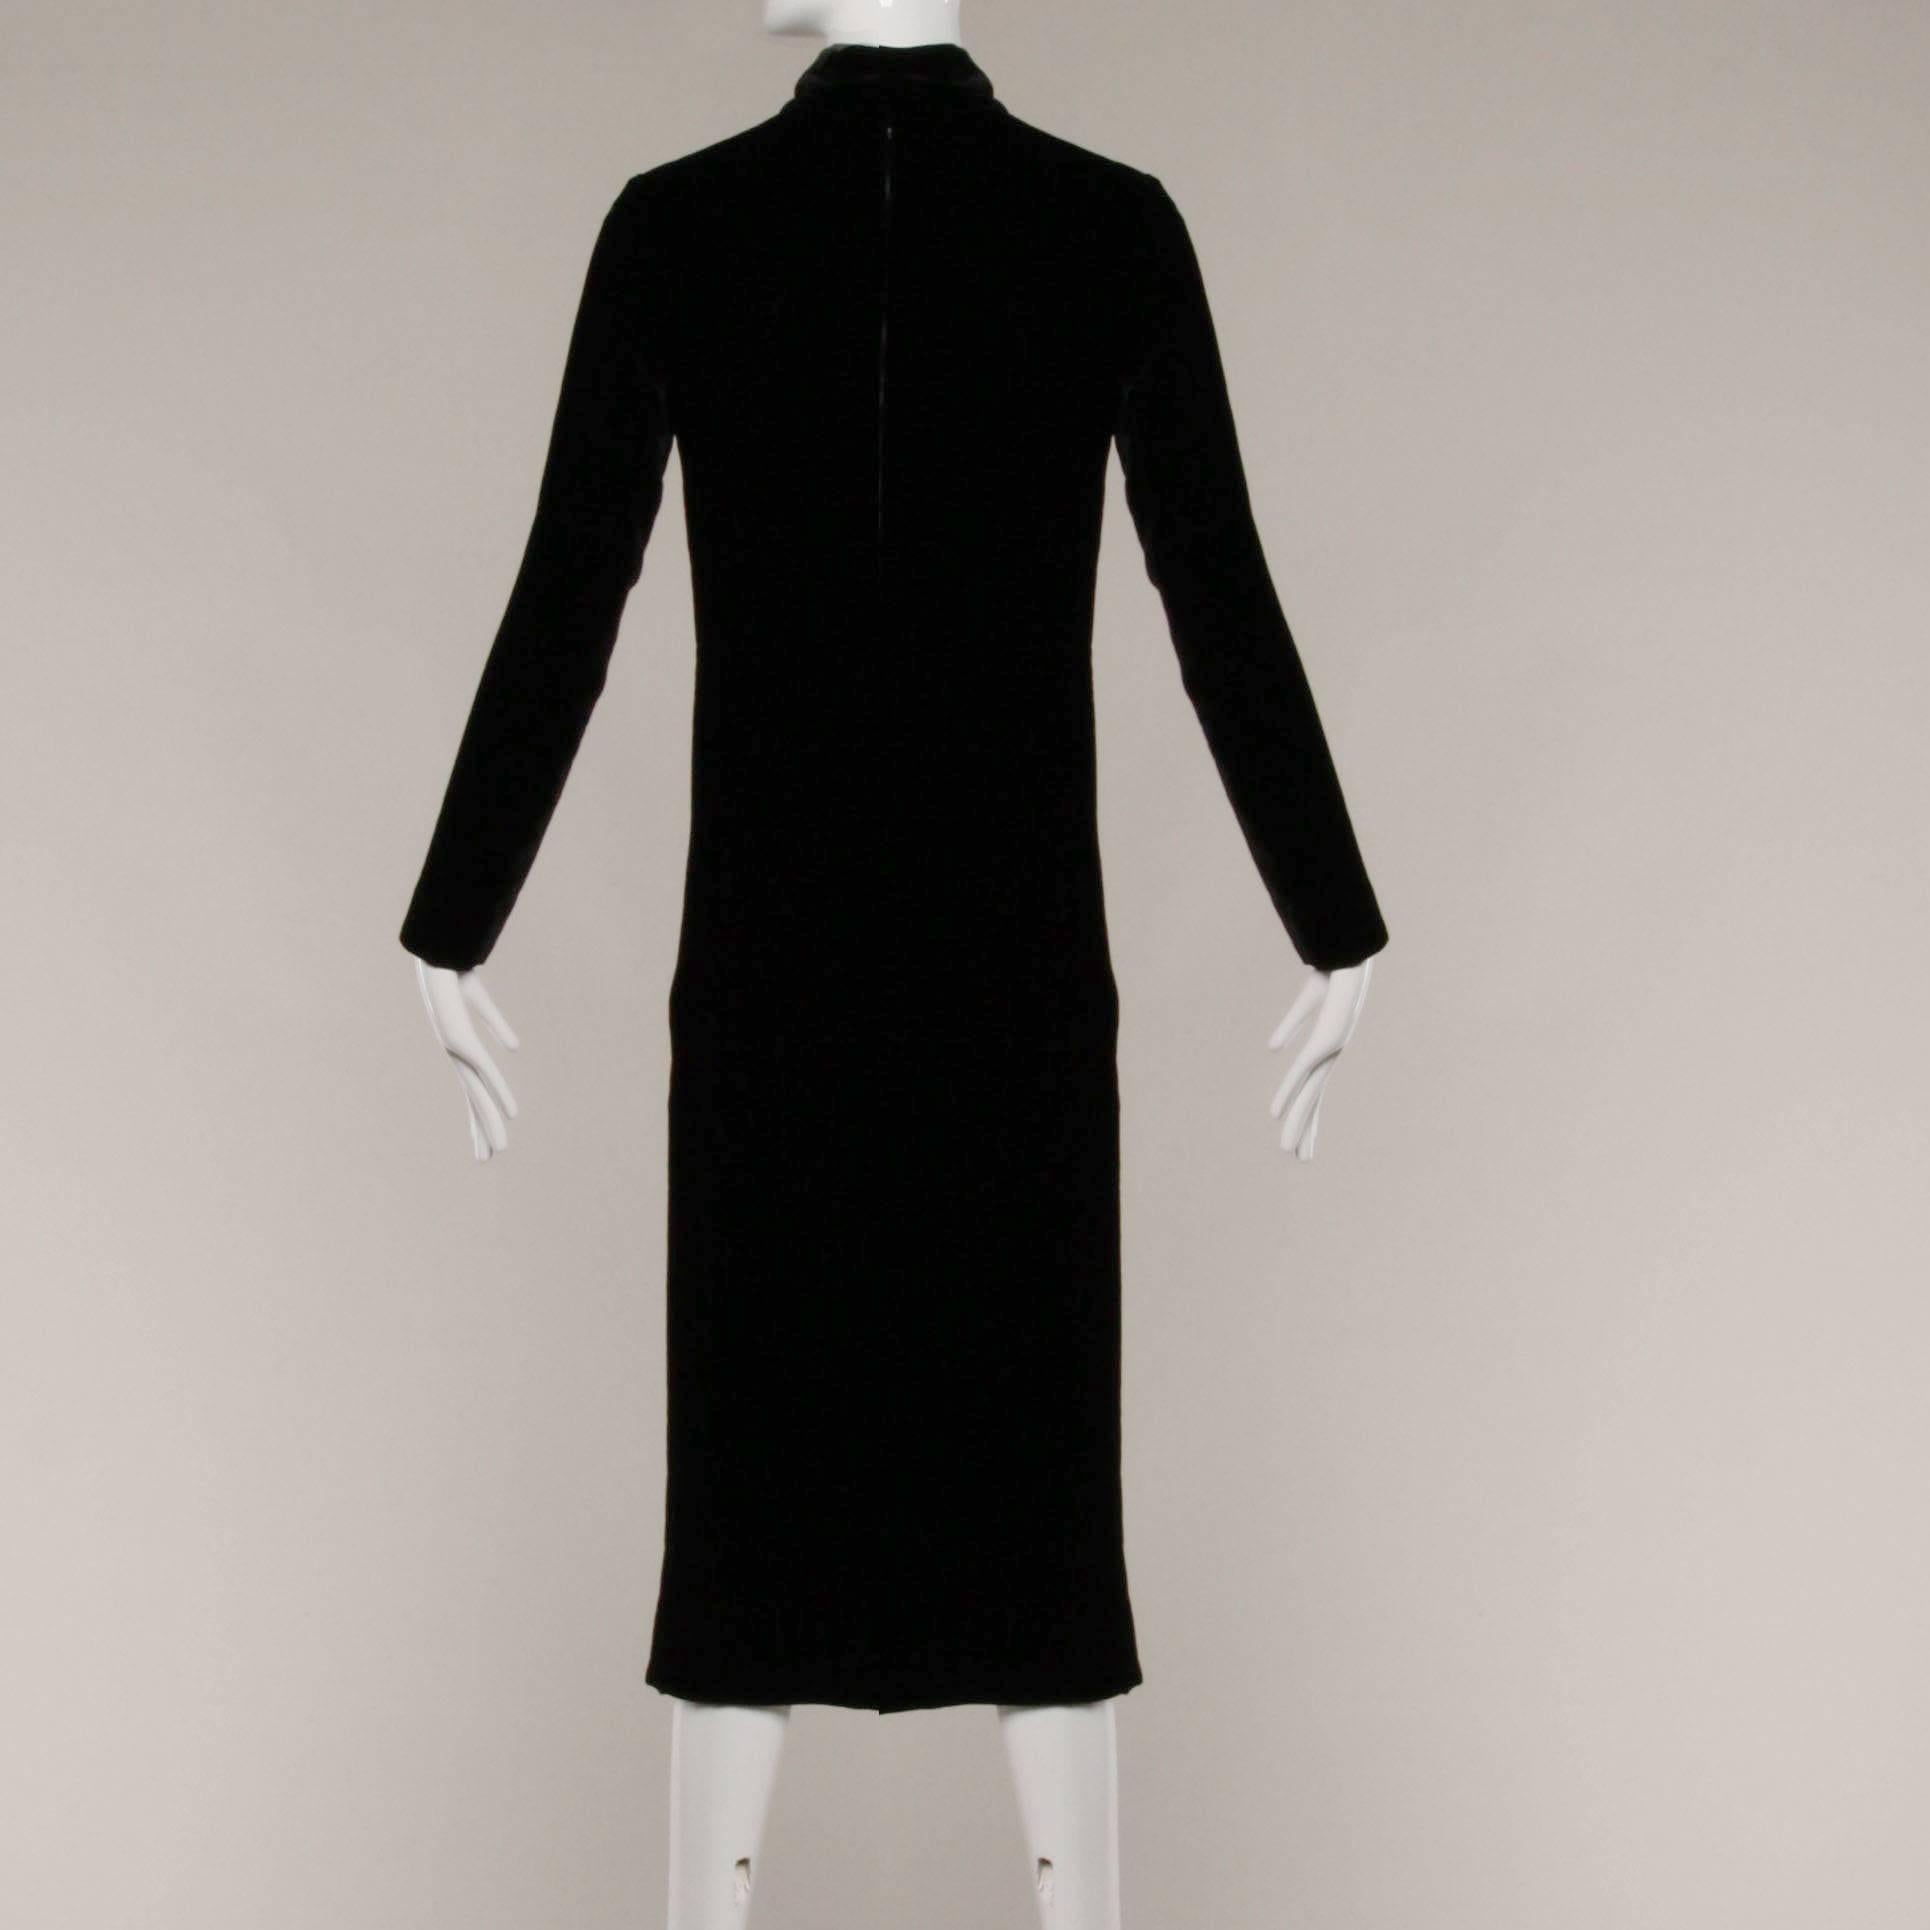 vintage black dress with sleeves